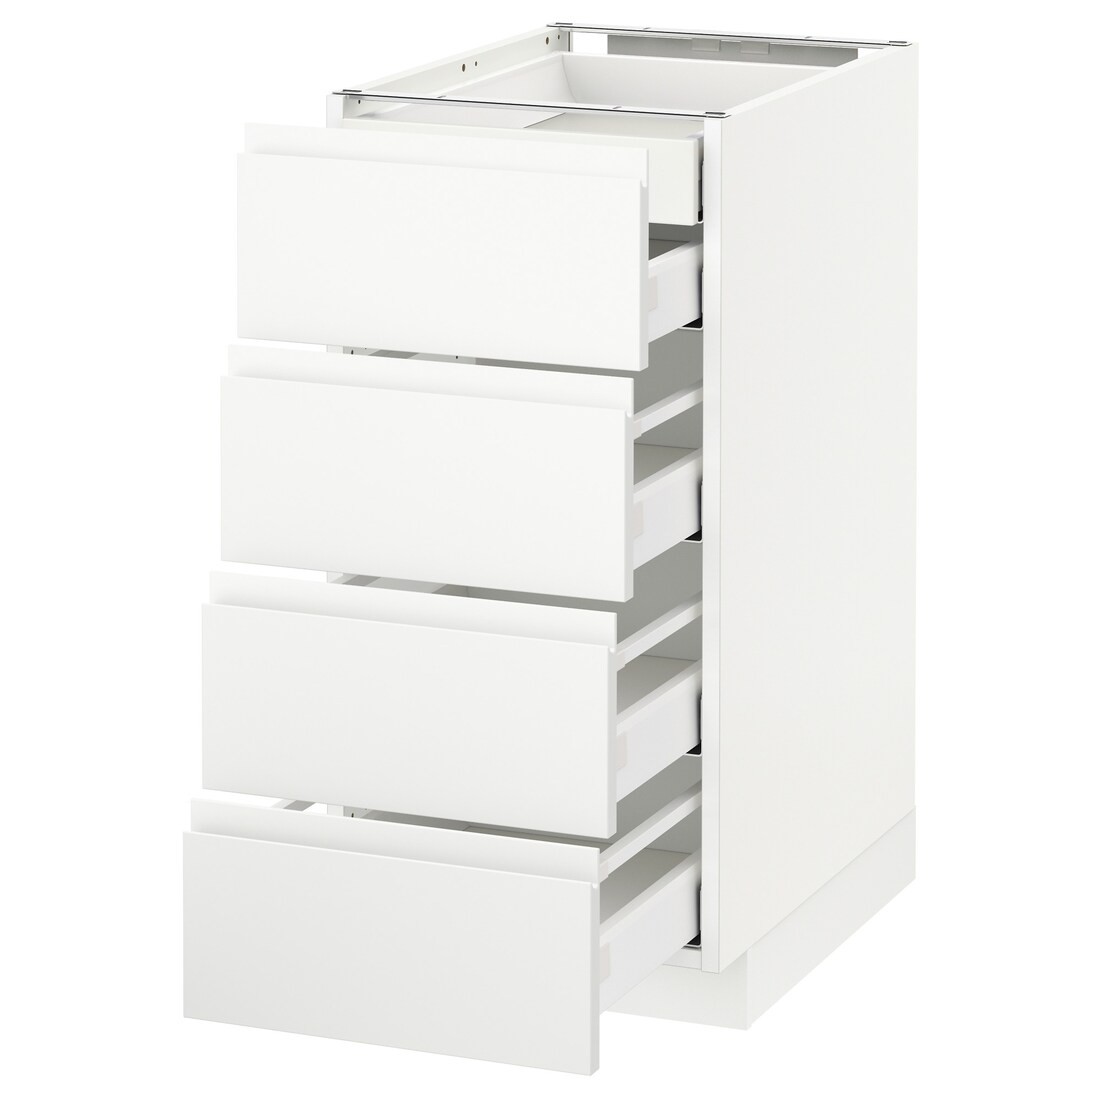 IKEA METOD МЕТОД / MAXIMERA МАКСИМЕРА Напольный шкаф с ящиками, белый / Voxtorp матовый белый, 40x60 см 09112098 091.120.98